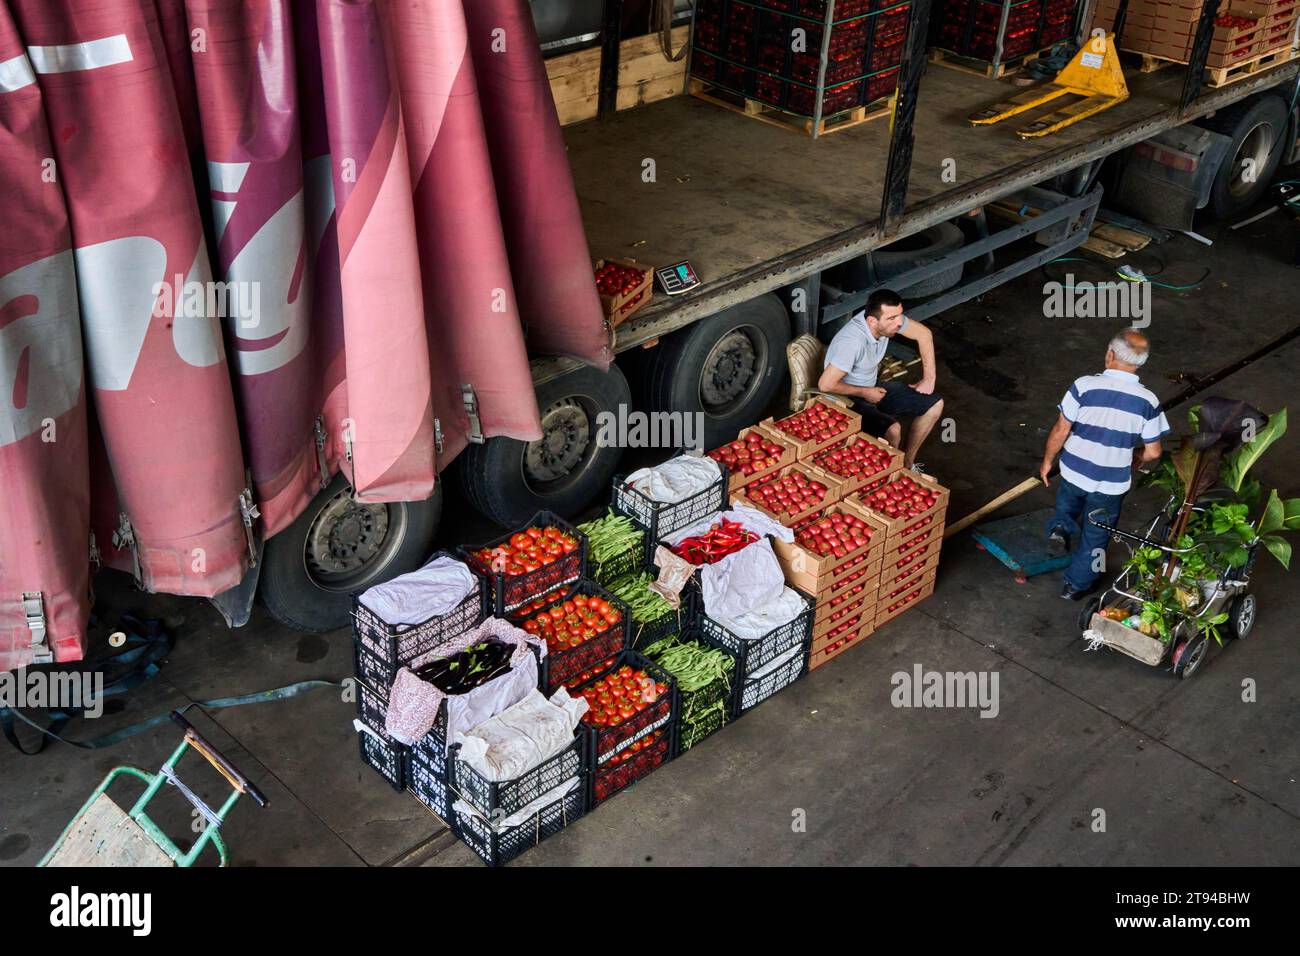 Großhändler mit Gemüse vor seinem LKW, Dezerter Markt, Dezerter Bazaar, Stadtteil Didube, Tiflis, Tiblissi, Tiblisi, Georgien Banque D'Images